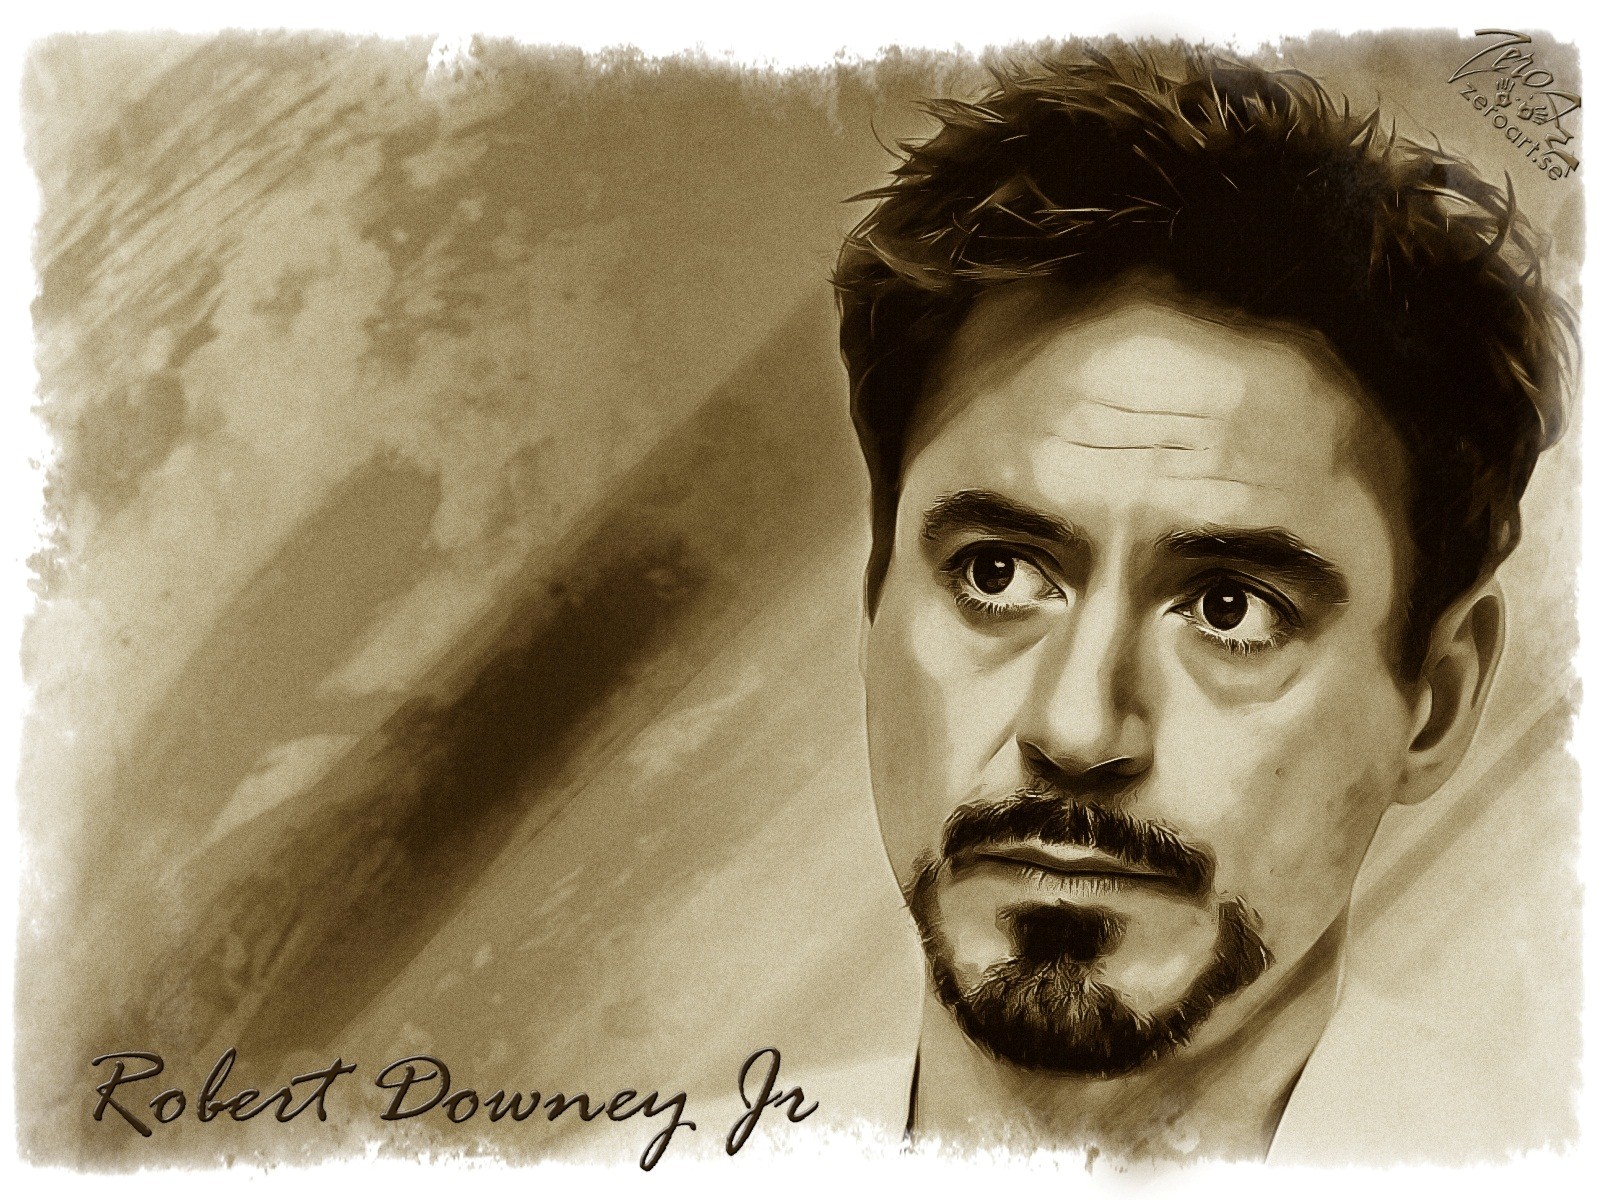 Robert Downey Jr Sketch - Robert Downey Jr - 1600x1200 Wallpaper 